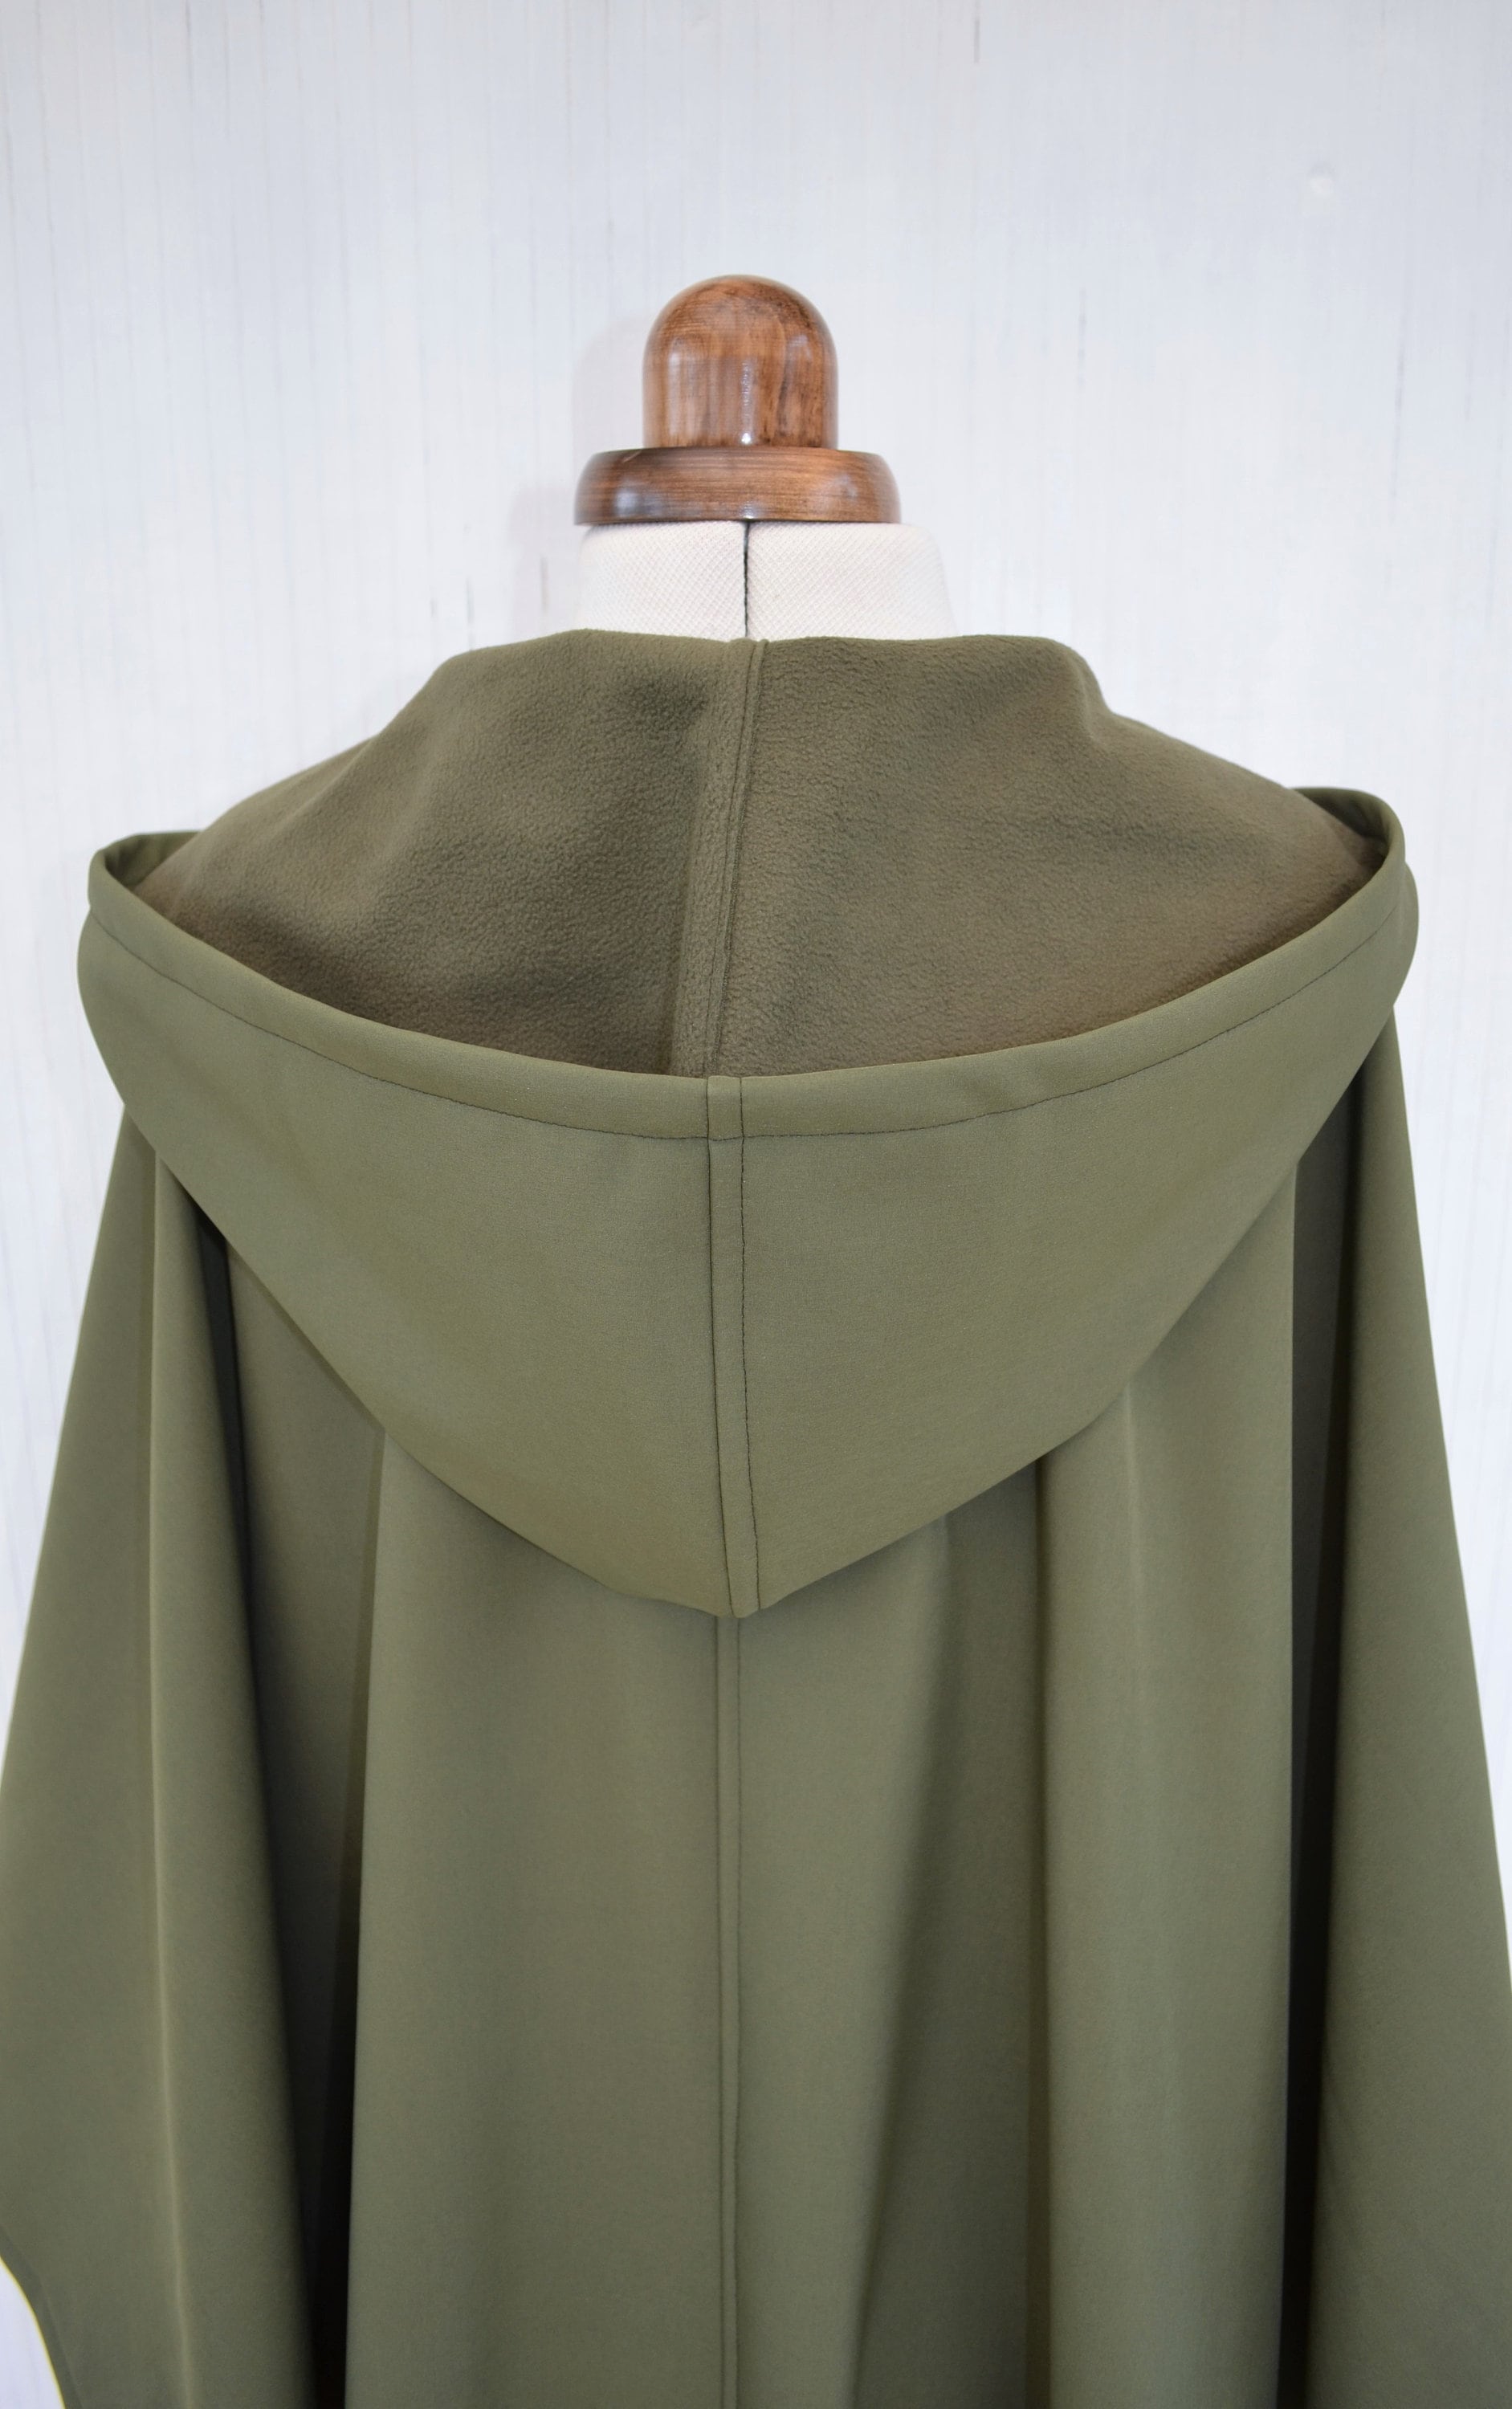 DeliCatStudio Waterproof and Windproof Cape Coat, Green or Black Hooded Cloak, Women's Outdoor Raincoat, Handmade Rain Poncho